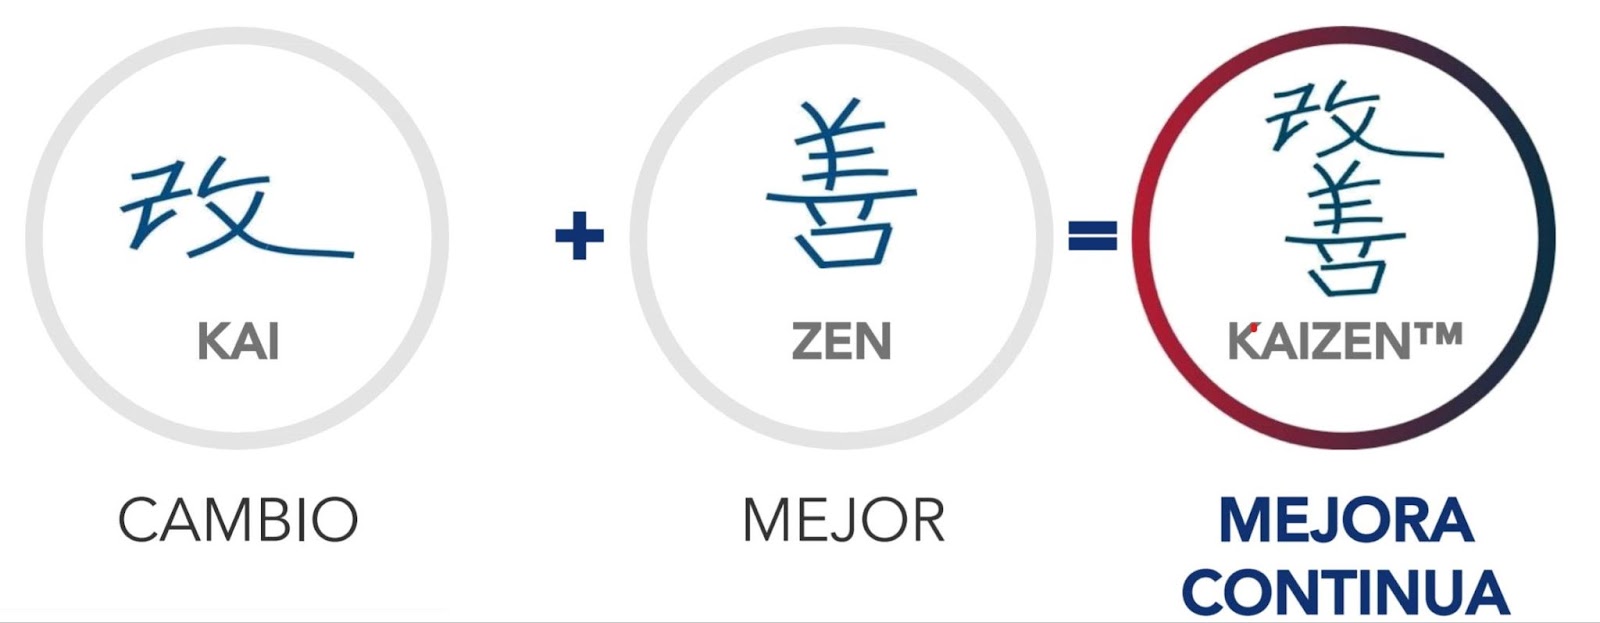 Simbología del Kaizen, una metodología de gestión de procesos bastante difundida en empresas de todos los tamaños. SD Industrial